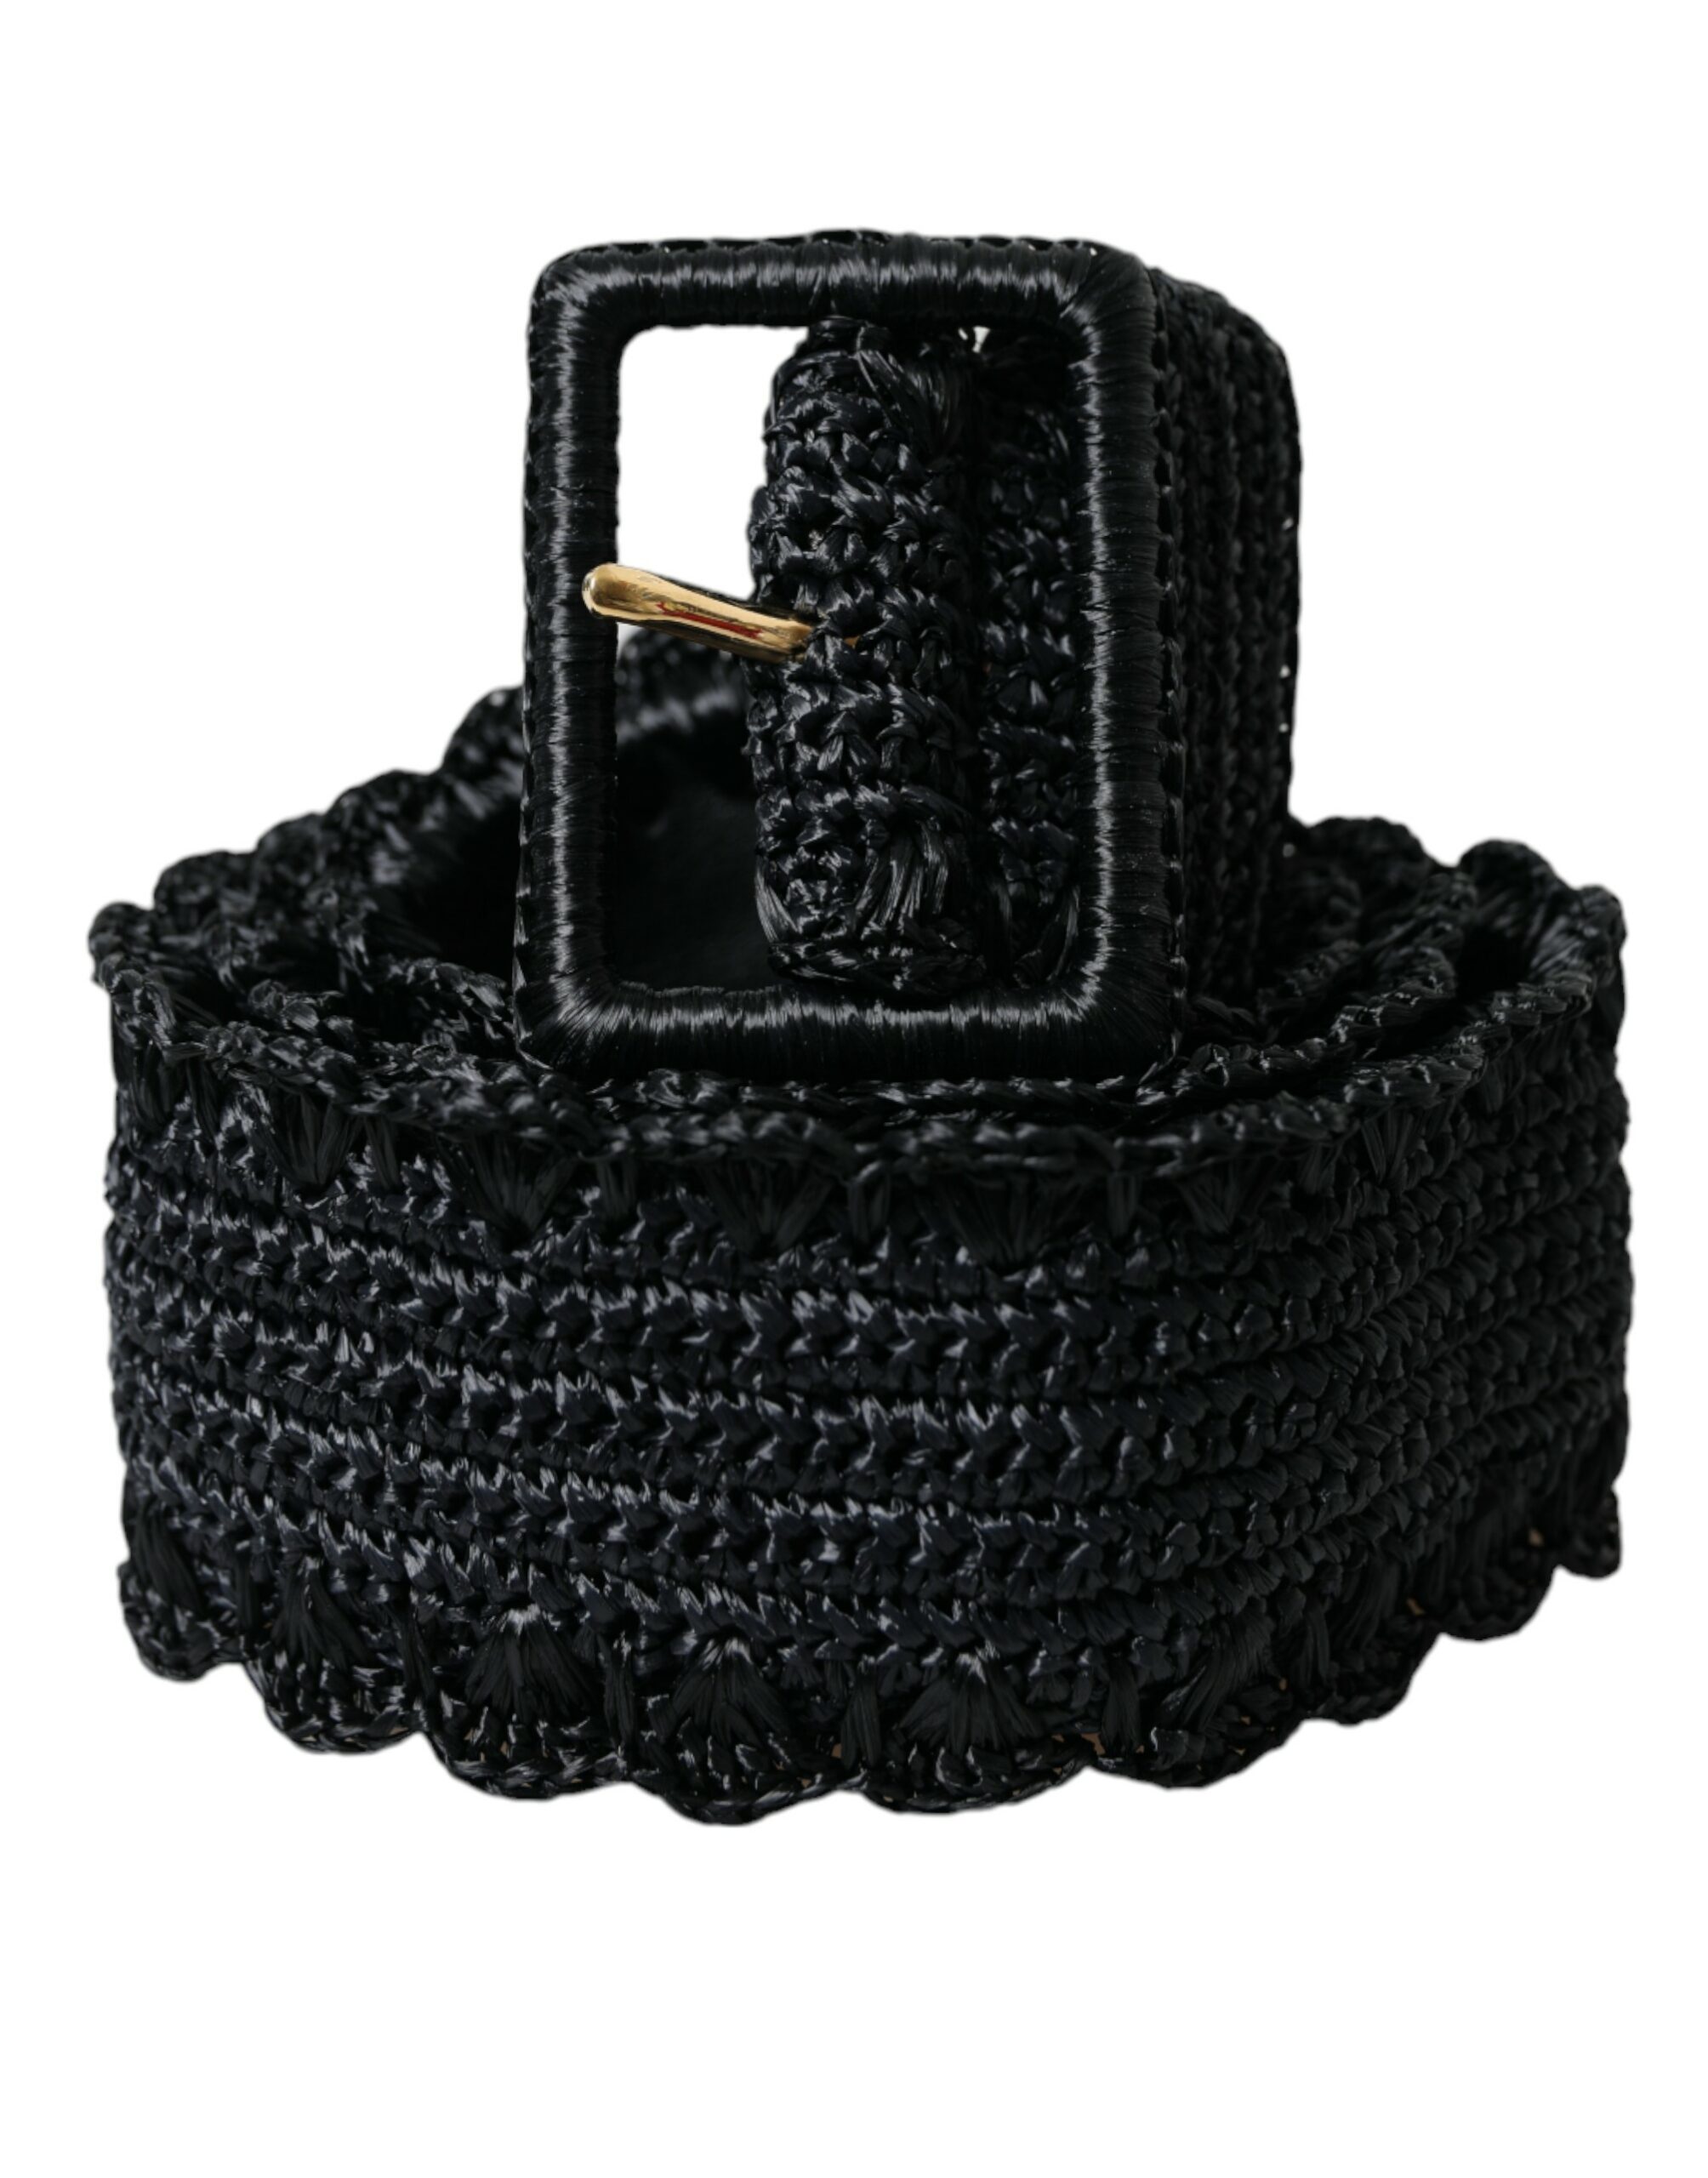 Black Dolce & Gabbana Black Braided Canvas Women Wide Waist Belt 85 cm / 34 Inches